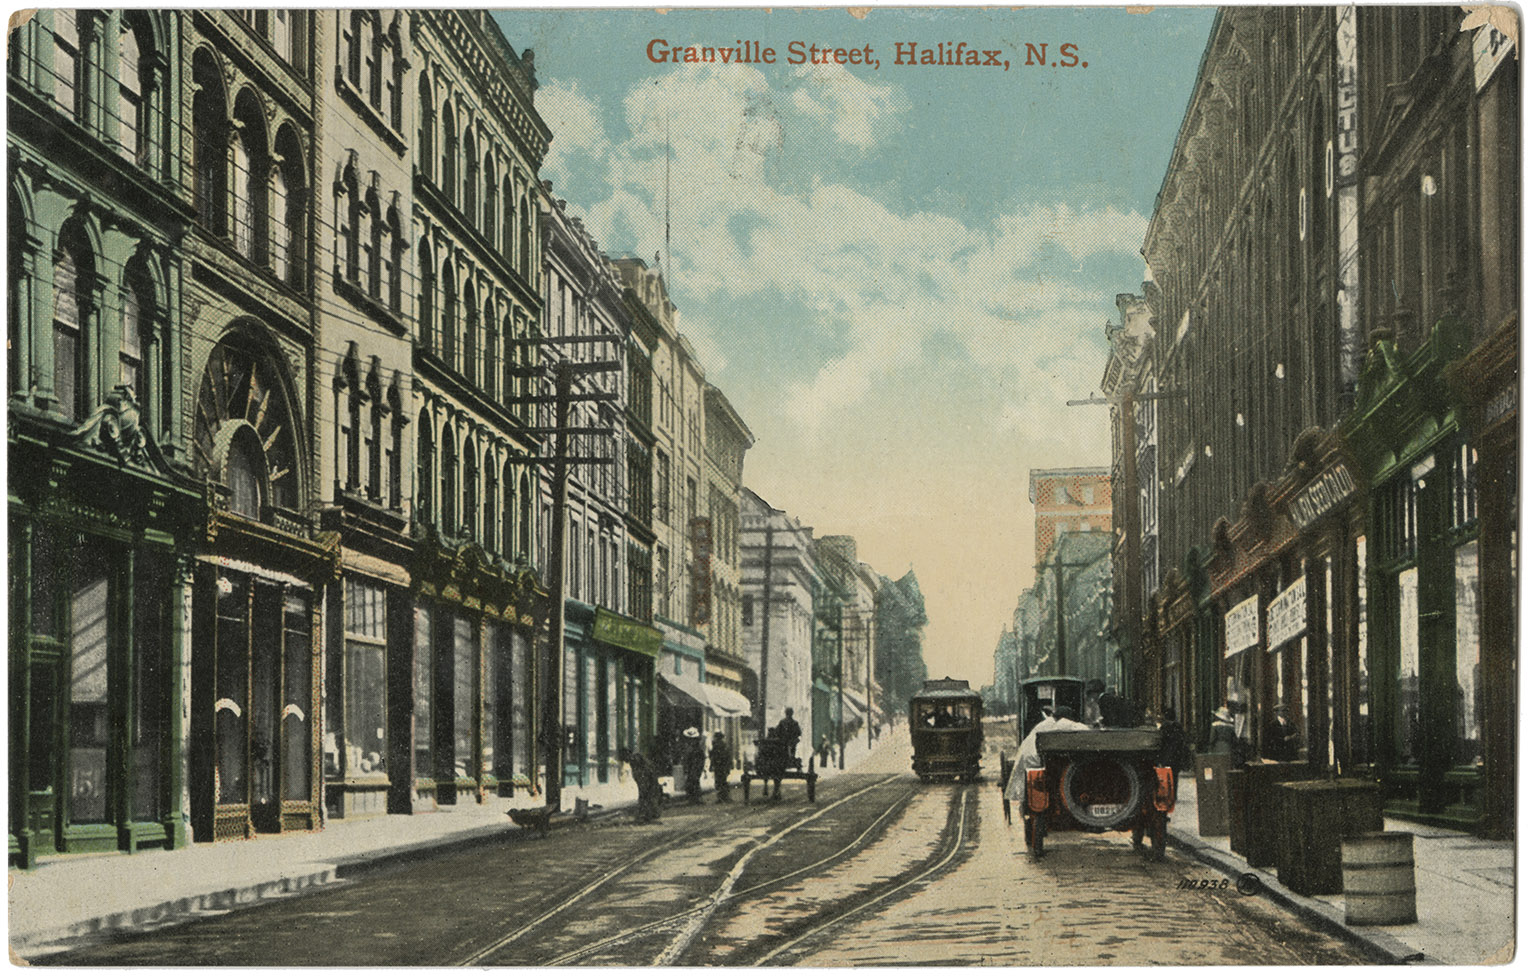 communityalbums - Granville Street, Halifax, N.S.